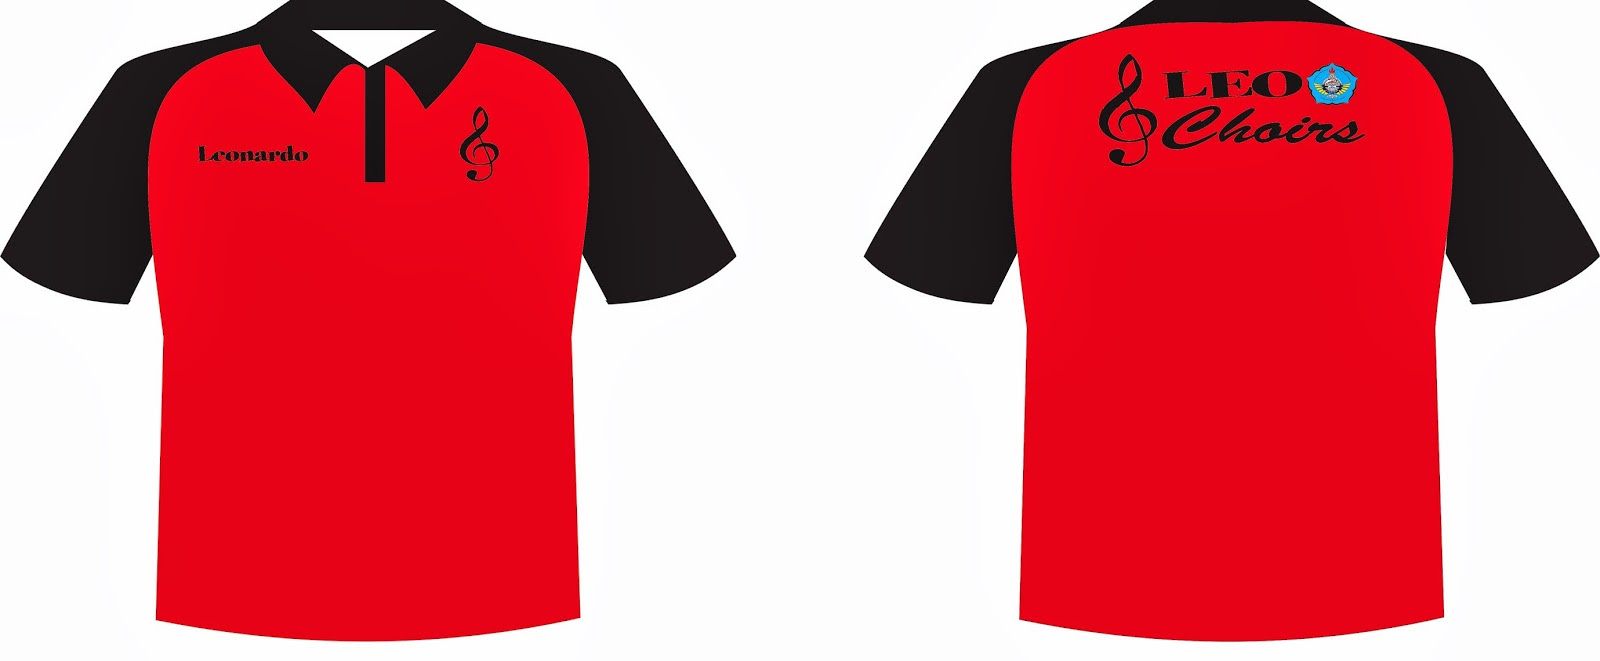  Desain  Baju Futsal Gambar  C